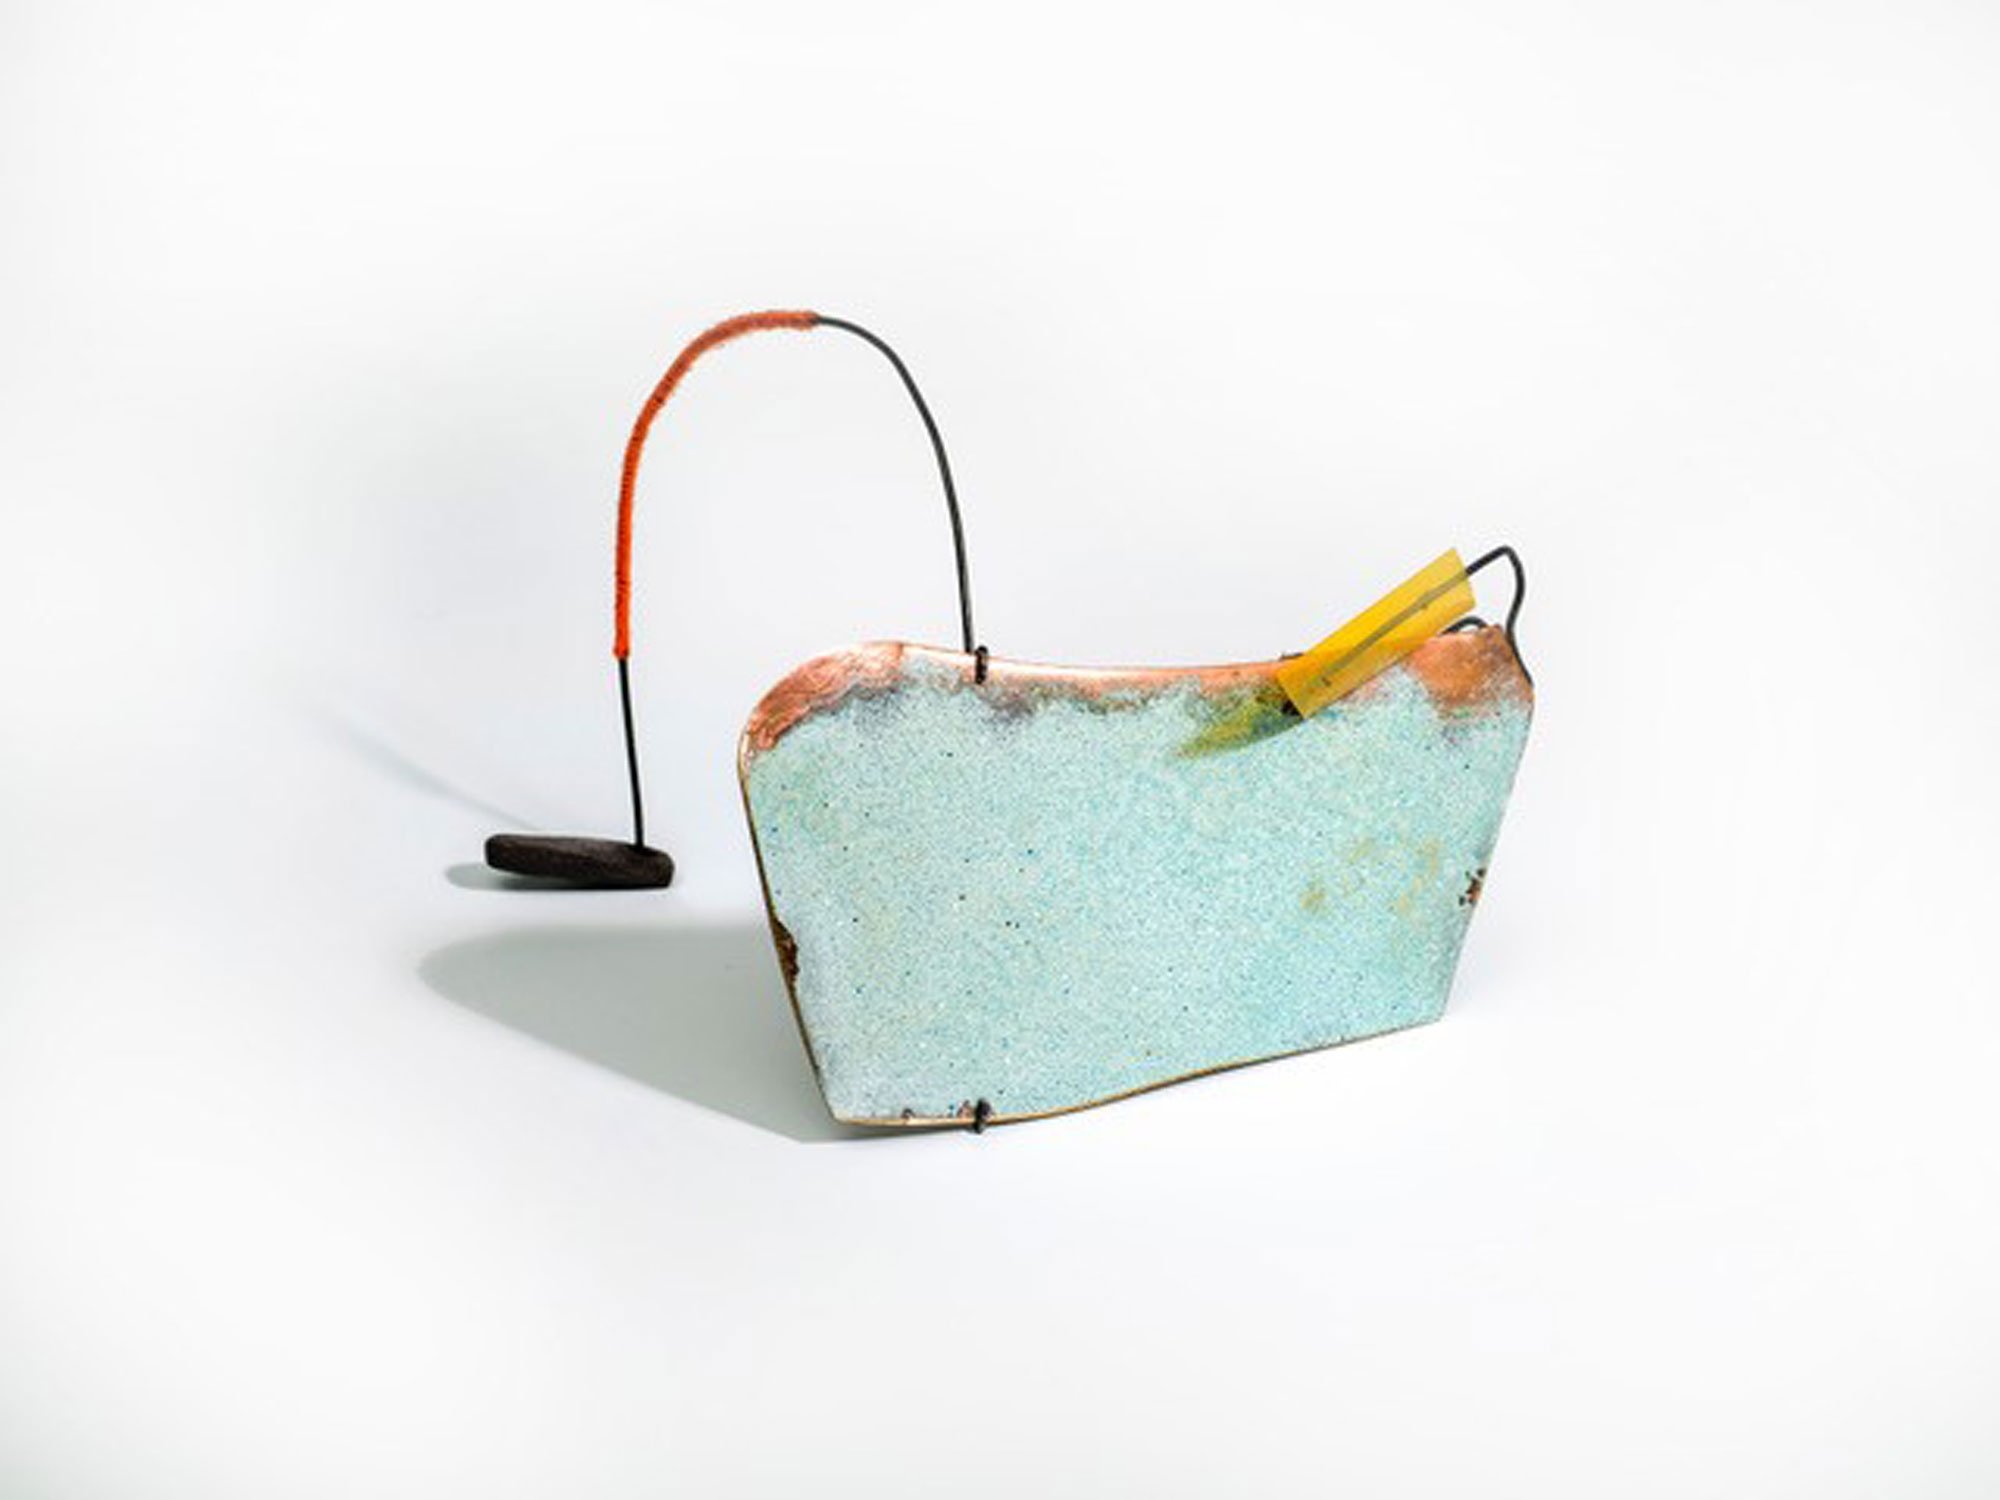 Le Lien 69 - Sculpture en cuivre émaillé, fil coton , fil de fer recuit, céramique - 2021 - Photo : Luc Schrobiltgen
